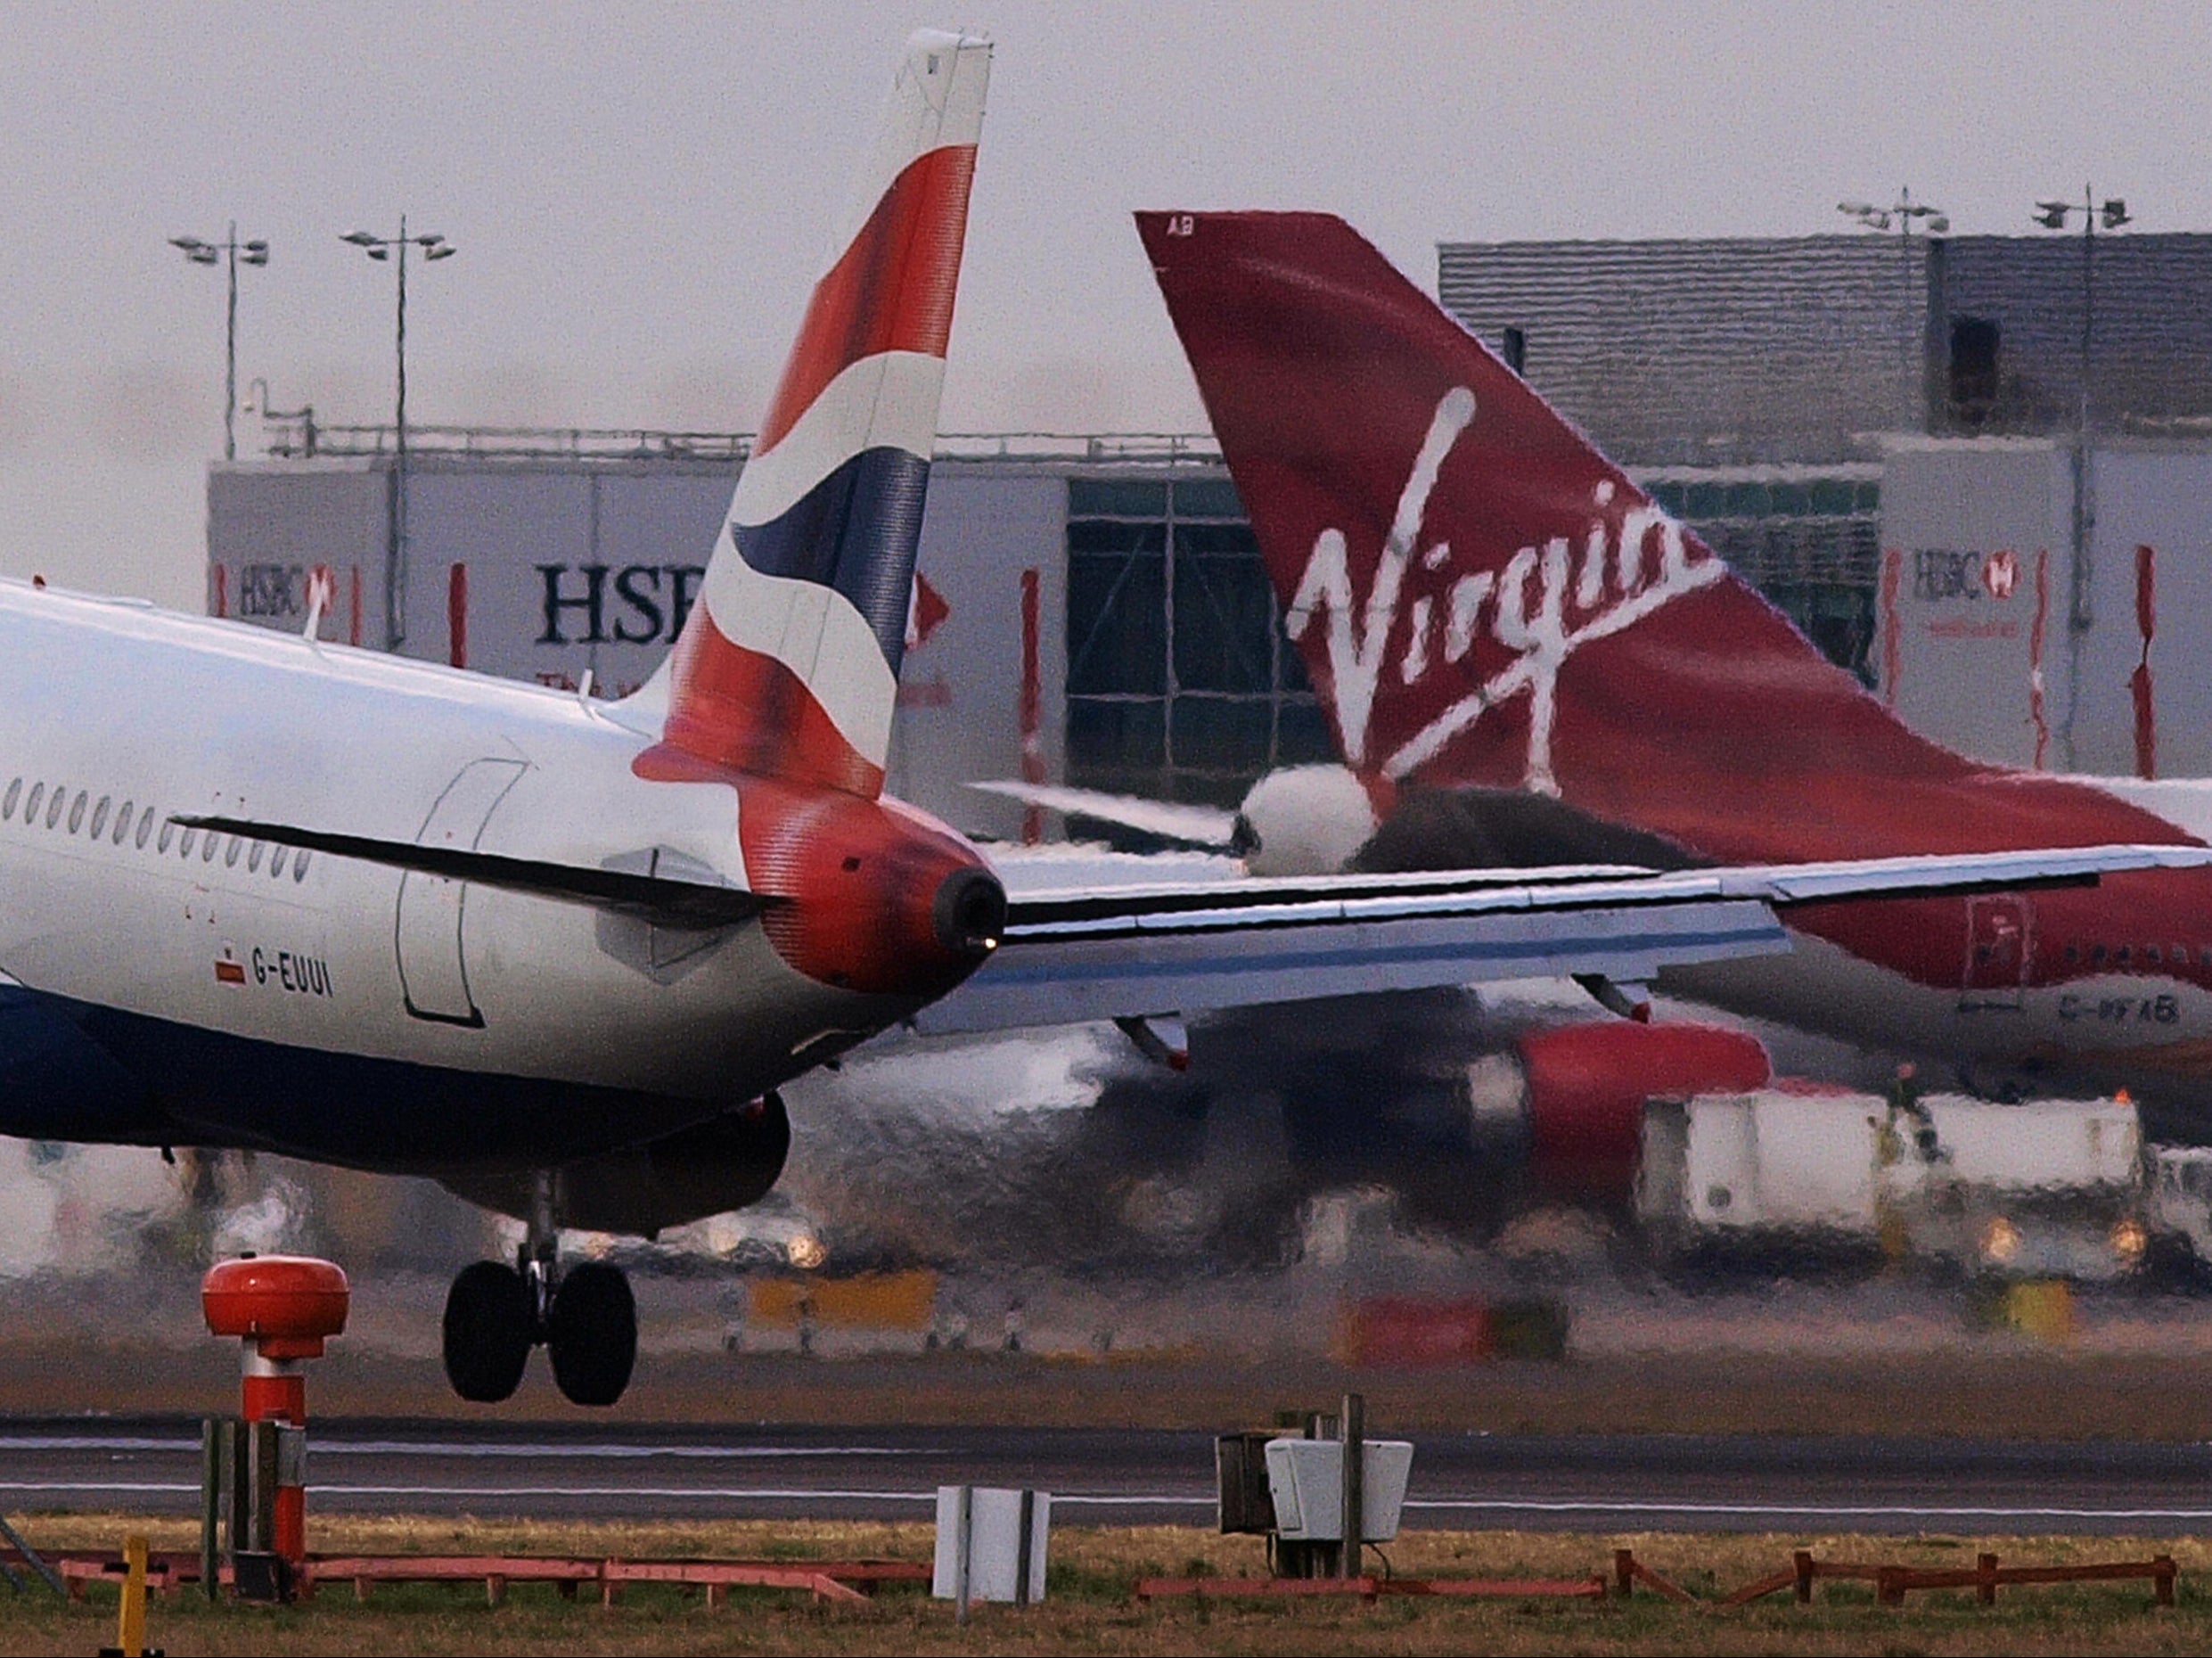 British Airways and Virgin Atlantic are charging a premium